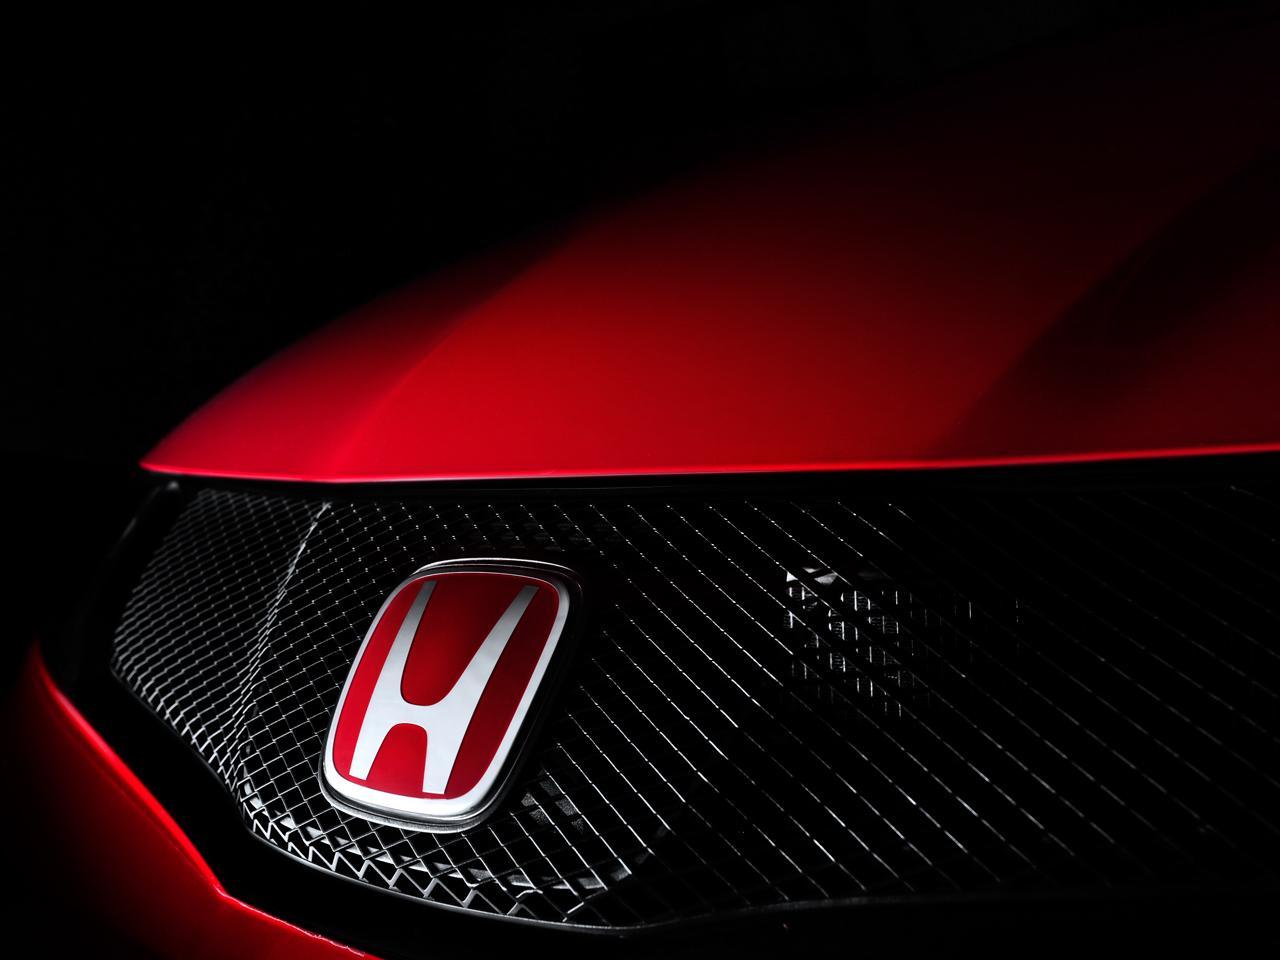 Honda Symbol Wallpapers